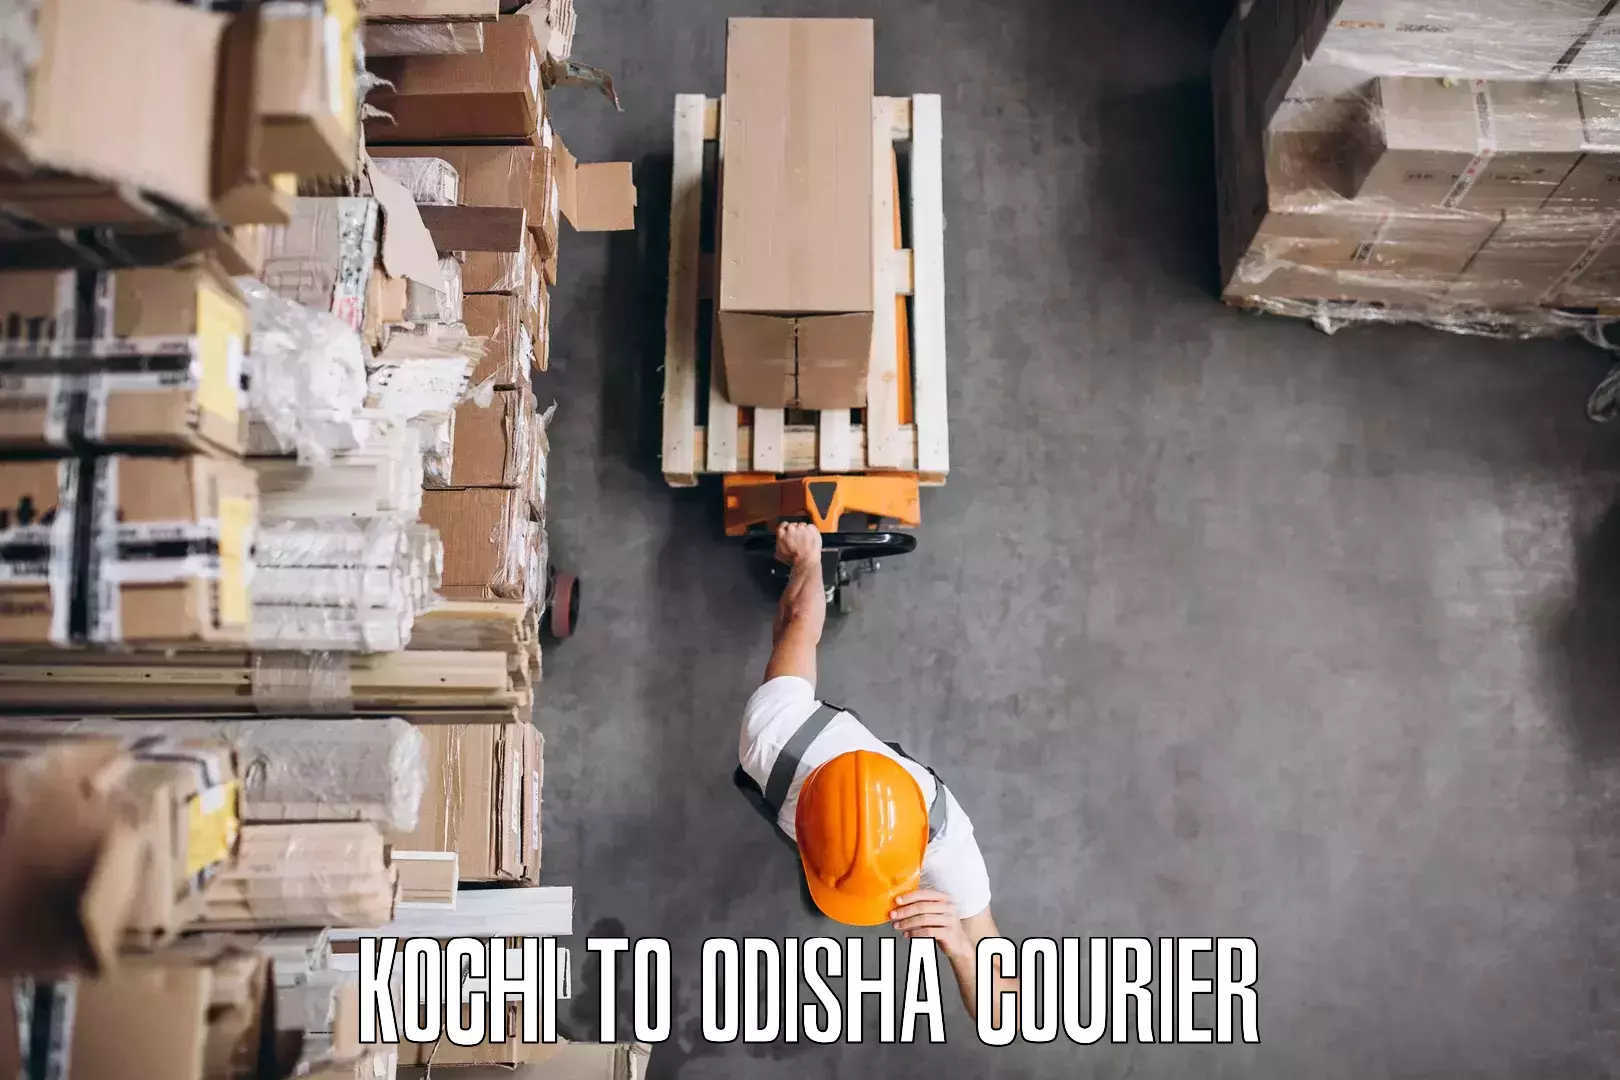 Efficient household movers Kochi to Kodala